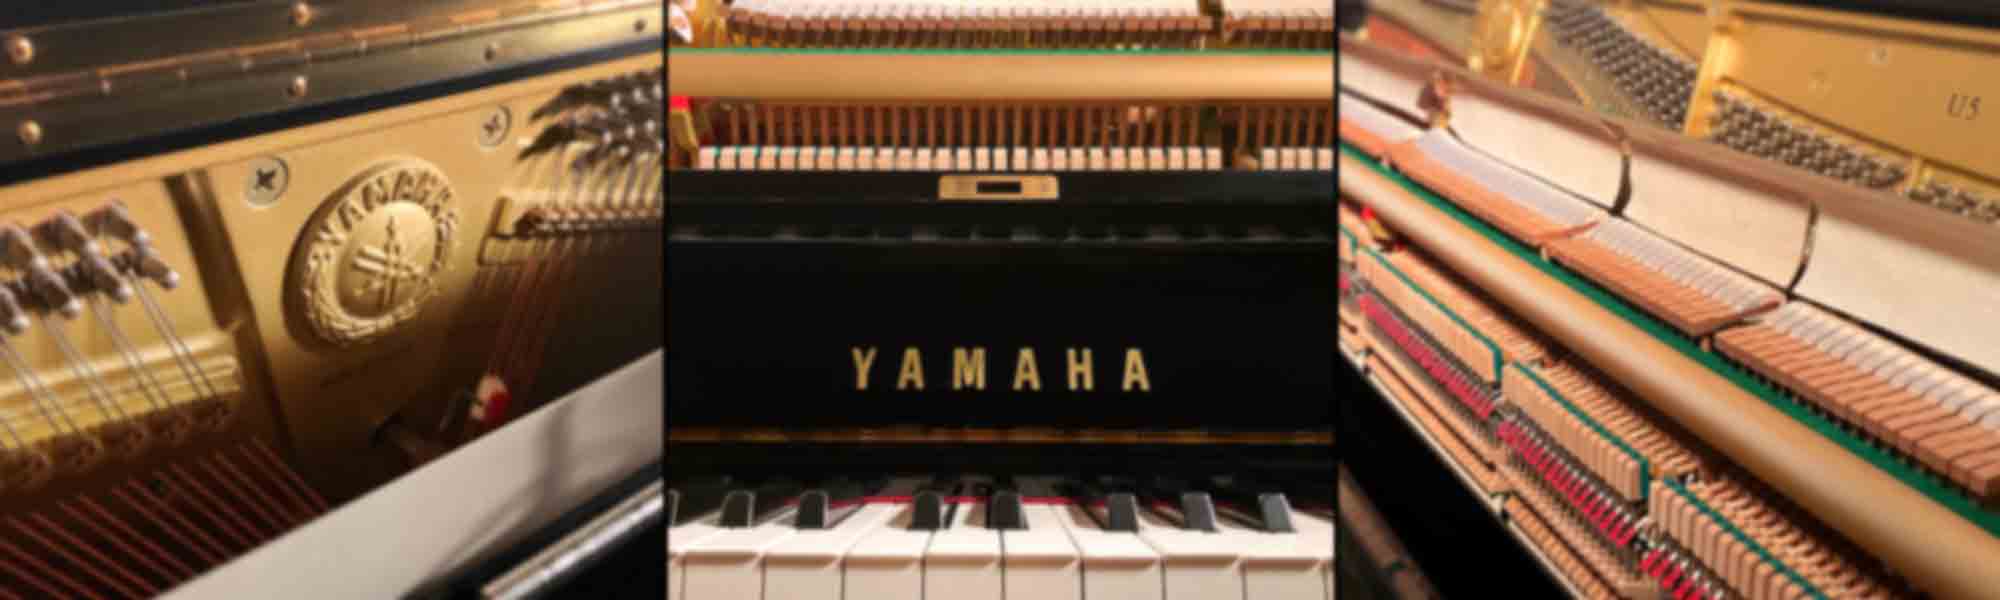 Yamaha U5 upright piano